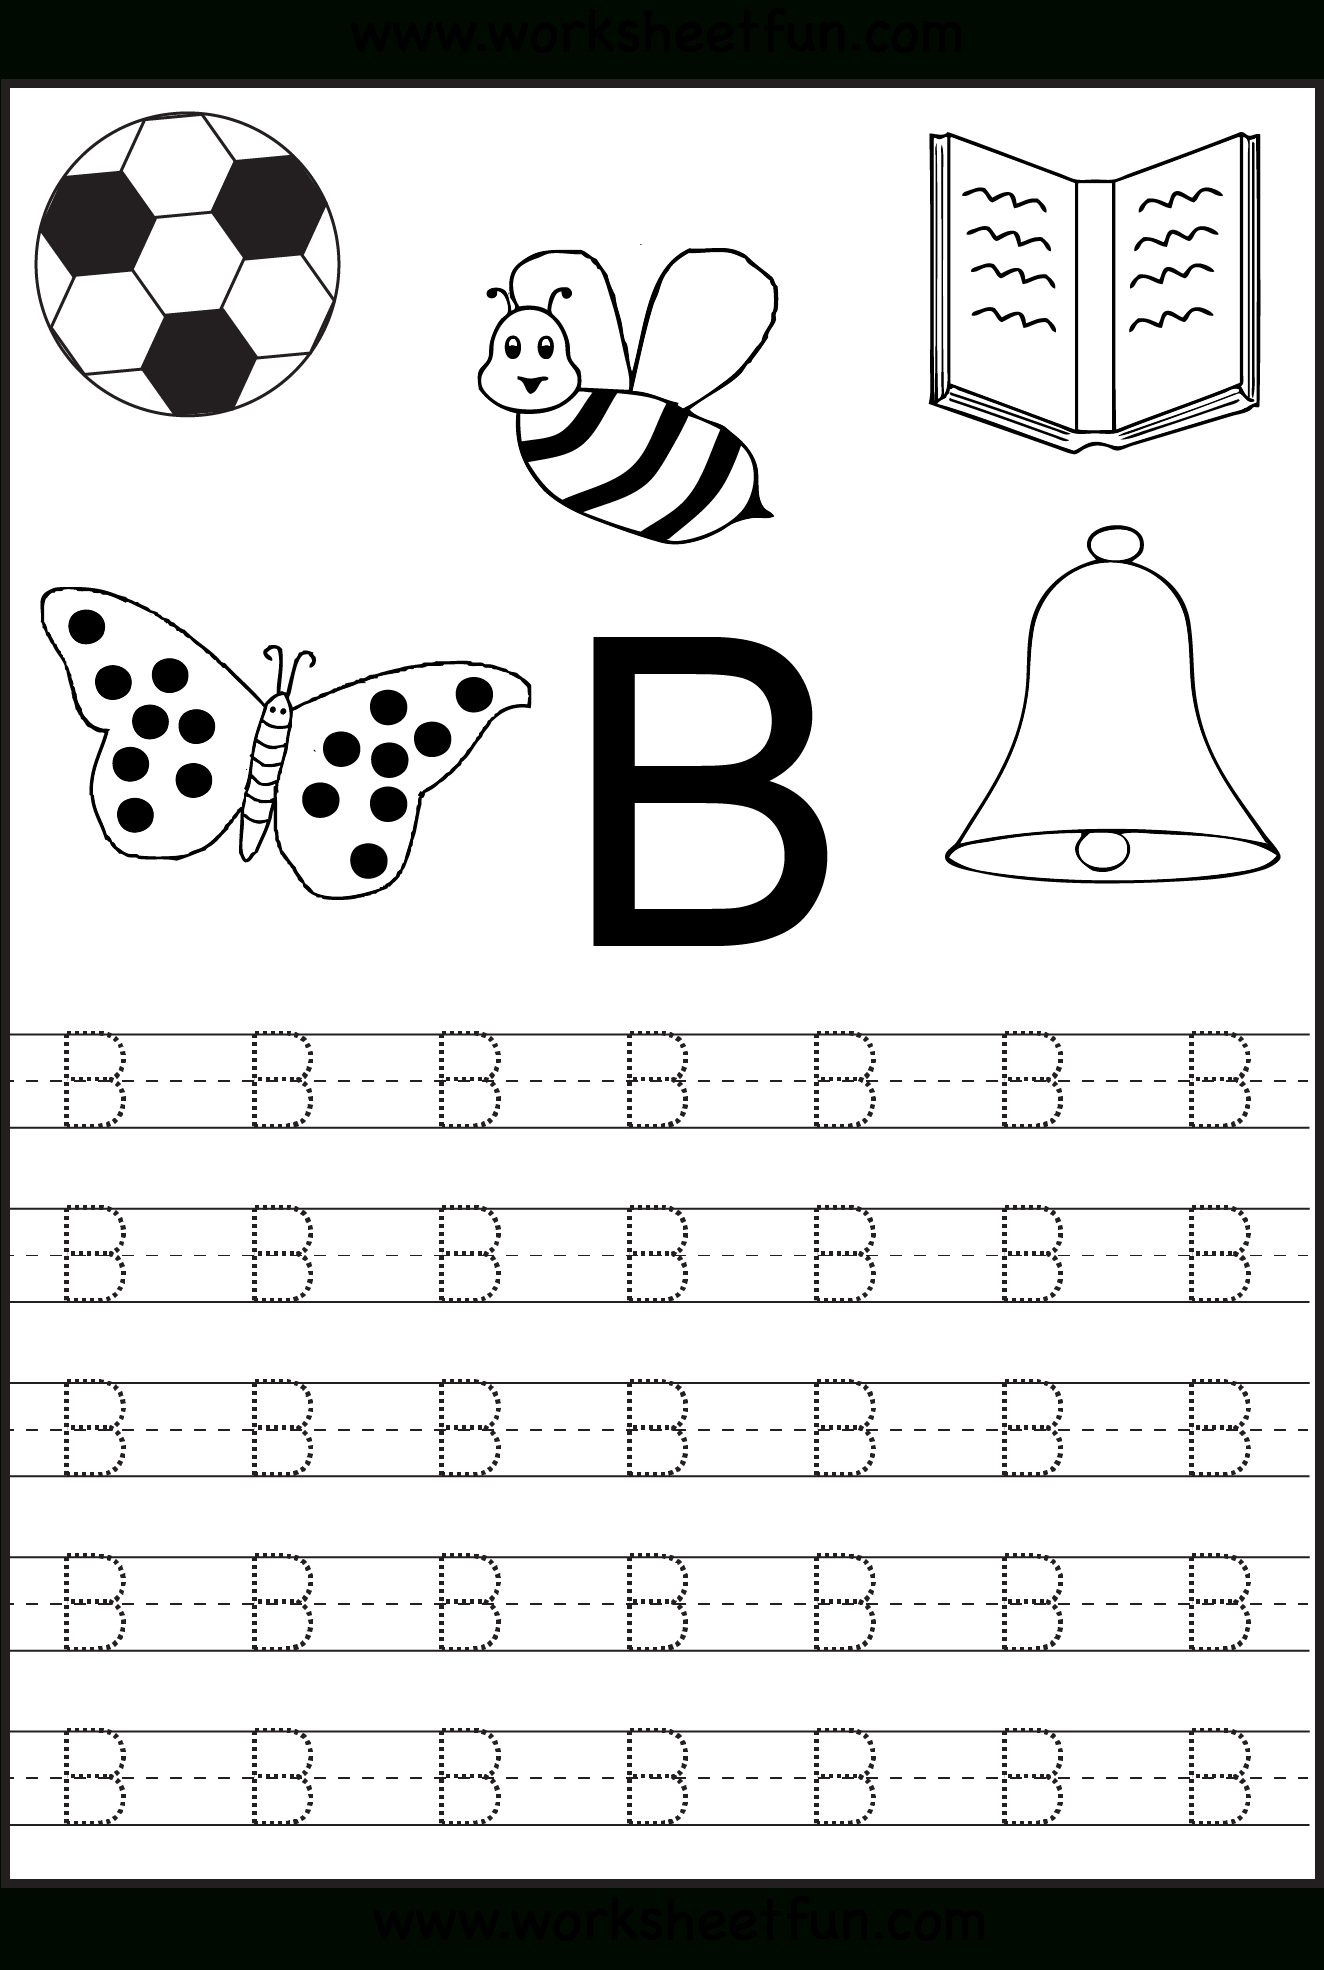 Free Printable Letter Tracing Worksheets For Kindergarten inside Alphabet Worksheets For Preschoolers Printable